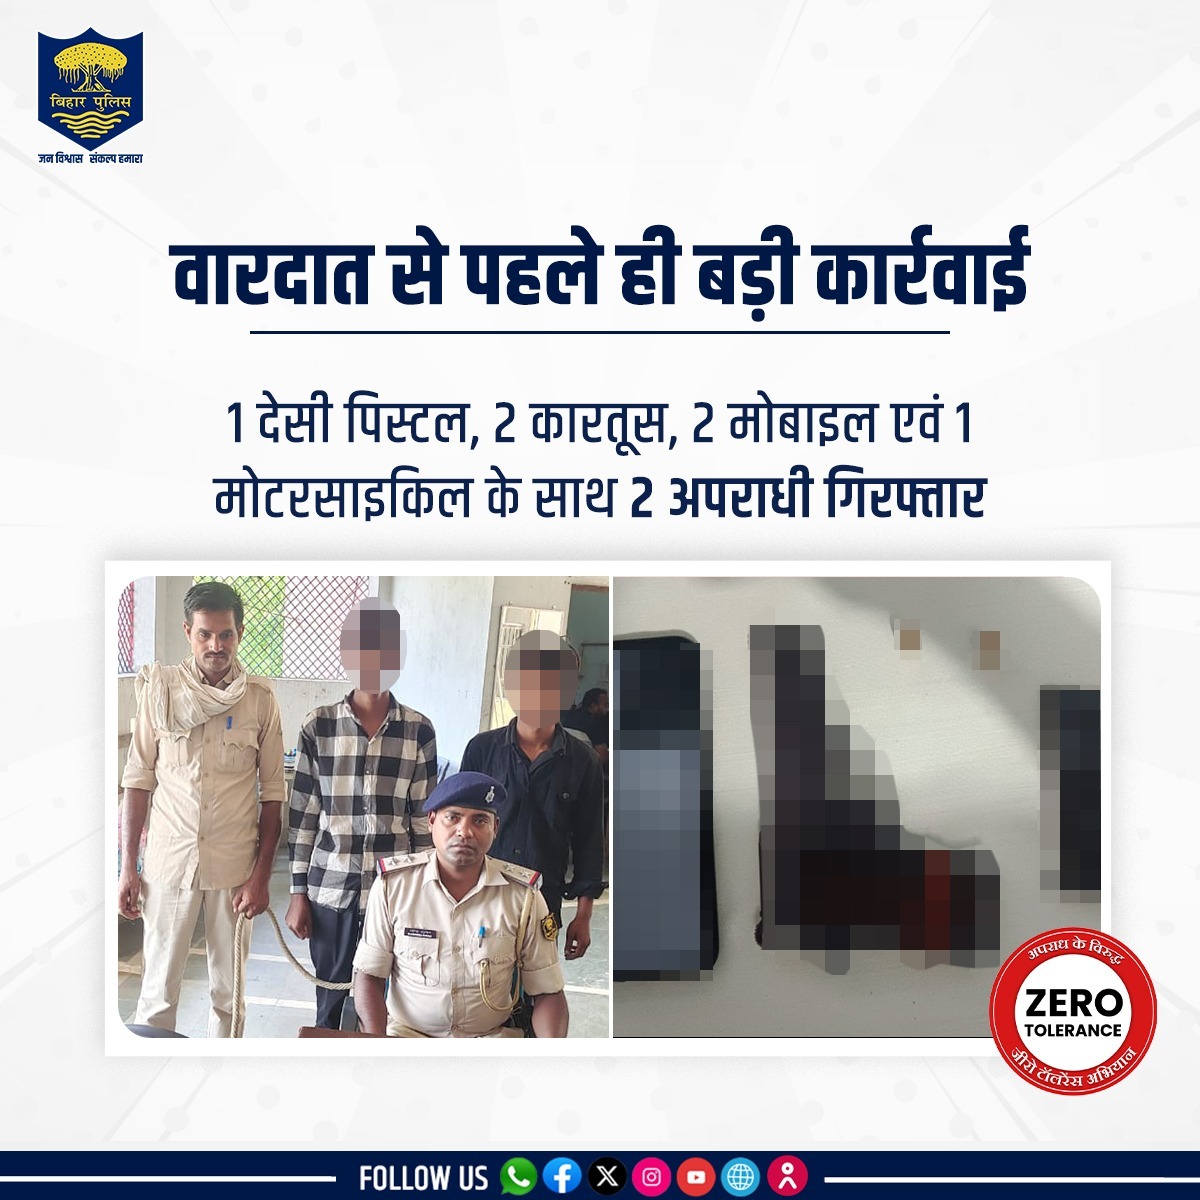 बड़ी घटना को अंजाम देने से पहले ही #BiharPolice ने भोजपुर जिले के अजीमाबाद थानांतर्गत 2 अपराधियों को गिरफ्तार किया। 1 देसी पिस्टल, 2 कारतूस, 2 मोबाइल एवं 1 मोटरसाइकिल बरामद। . . #HainTaiyaarHum #Bihar